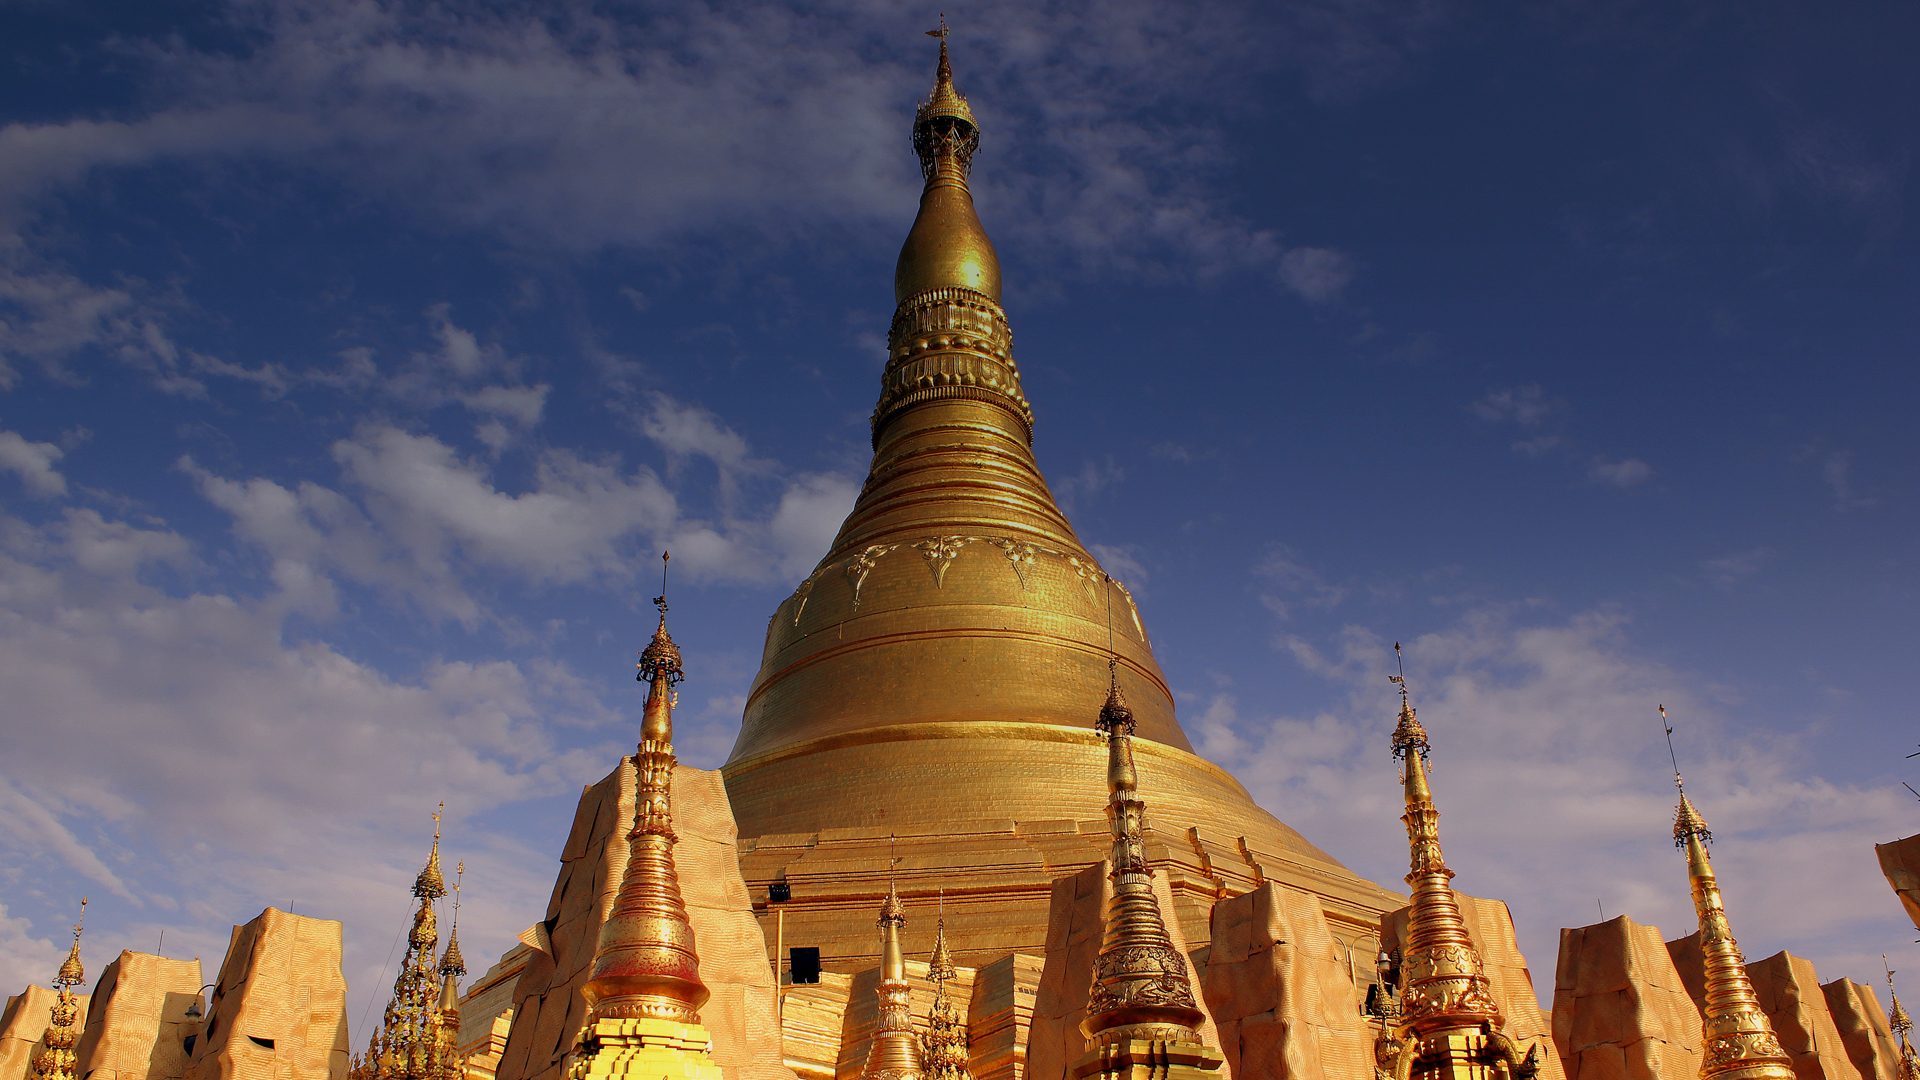 Der Buddhismus (Bild: buddhistische Shwedagon-Pagode) ist die dominierende Religion in Myanmar. Im ehemaligen Birma sind rund 87 Prozent der Menschen Buddhisten. Etwa sechs Prozent sind Christen, und rund vier Prozent der rund 53 Millionen Einwohner des Landes Muslime